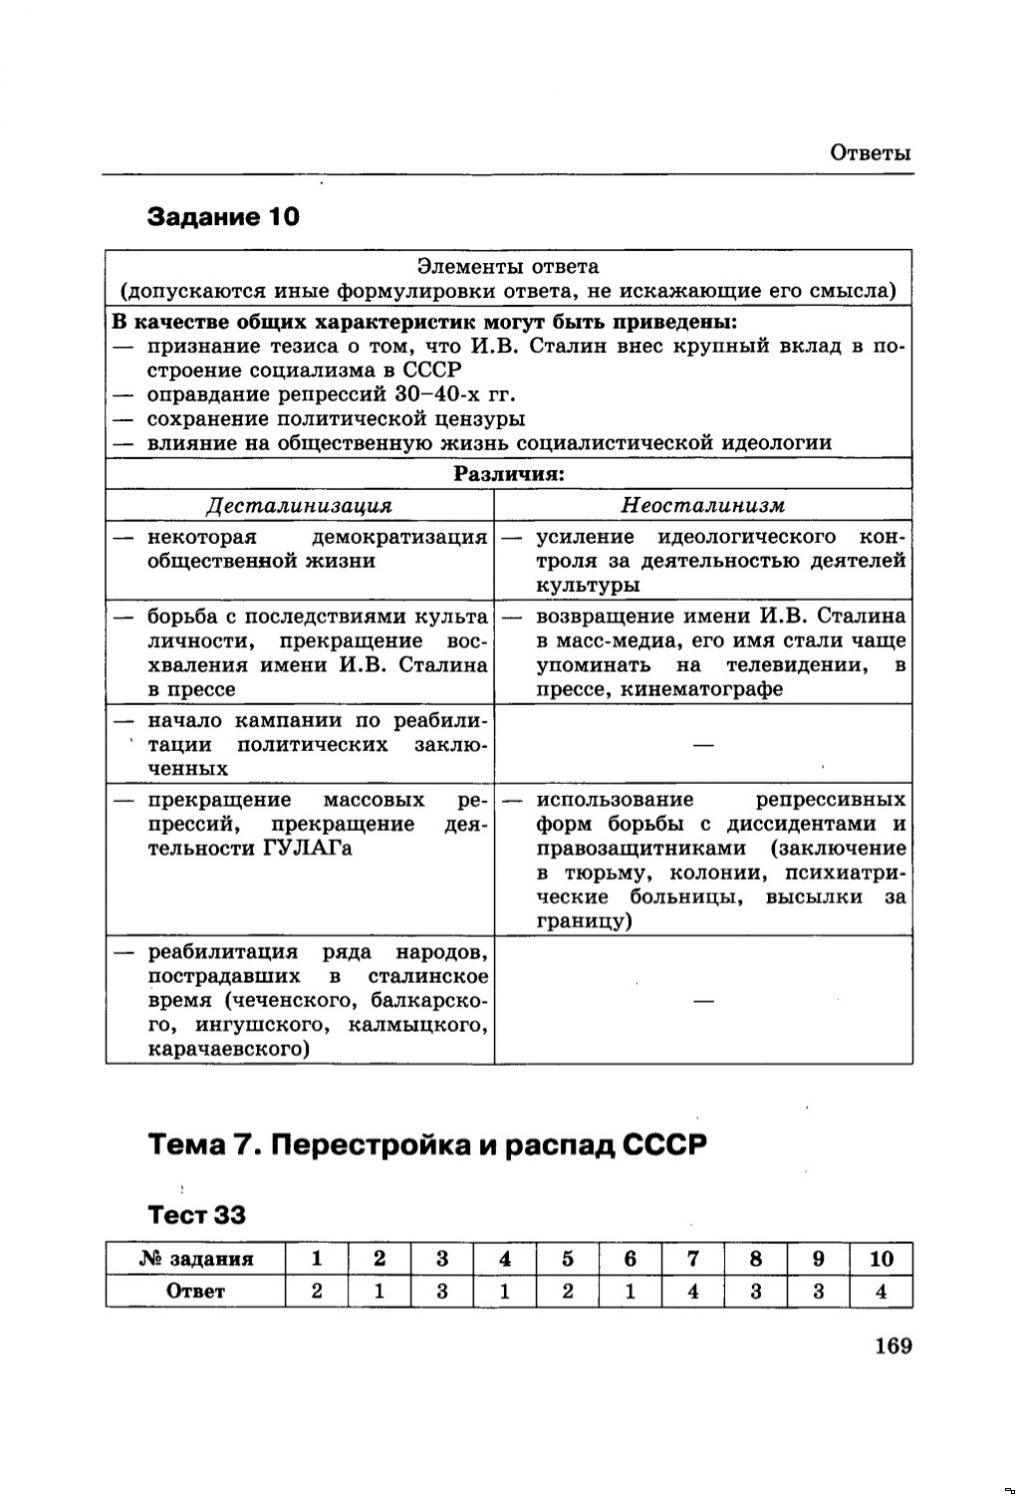 Контрольная работа по теме Религиозная политика СССР 1940-1980 гг.